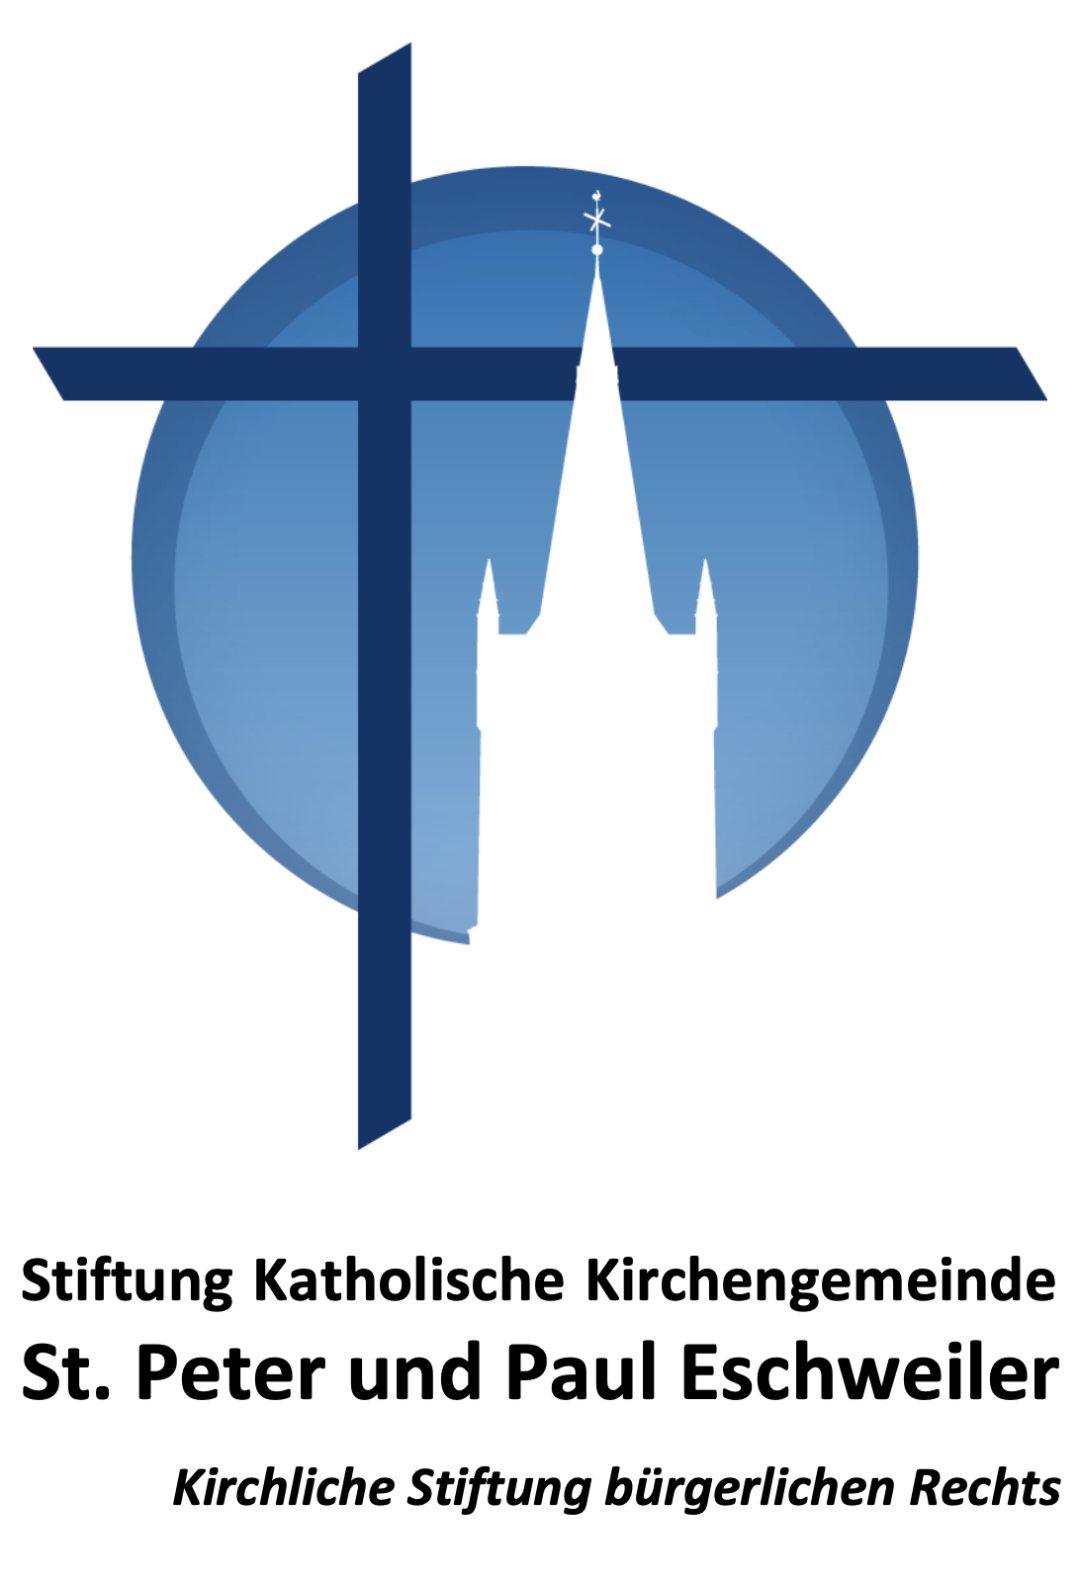 Stiftung Katholische Kirchengemeinde St. Peter und Paul Eschweiler (c) St. Peter und Paul